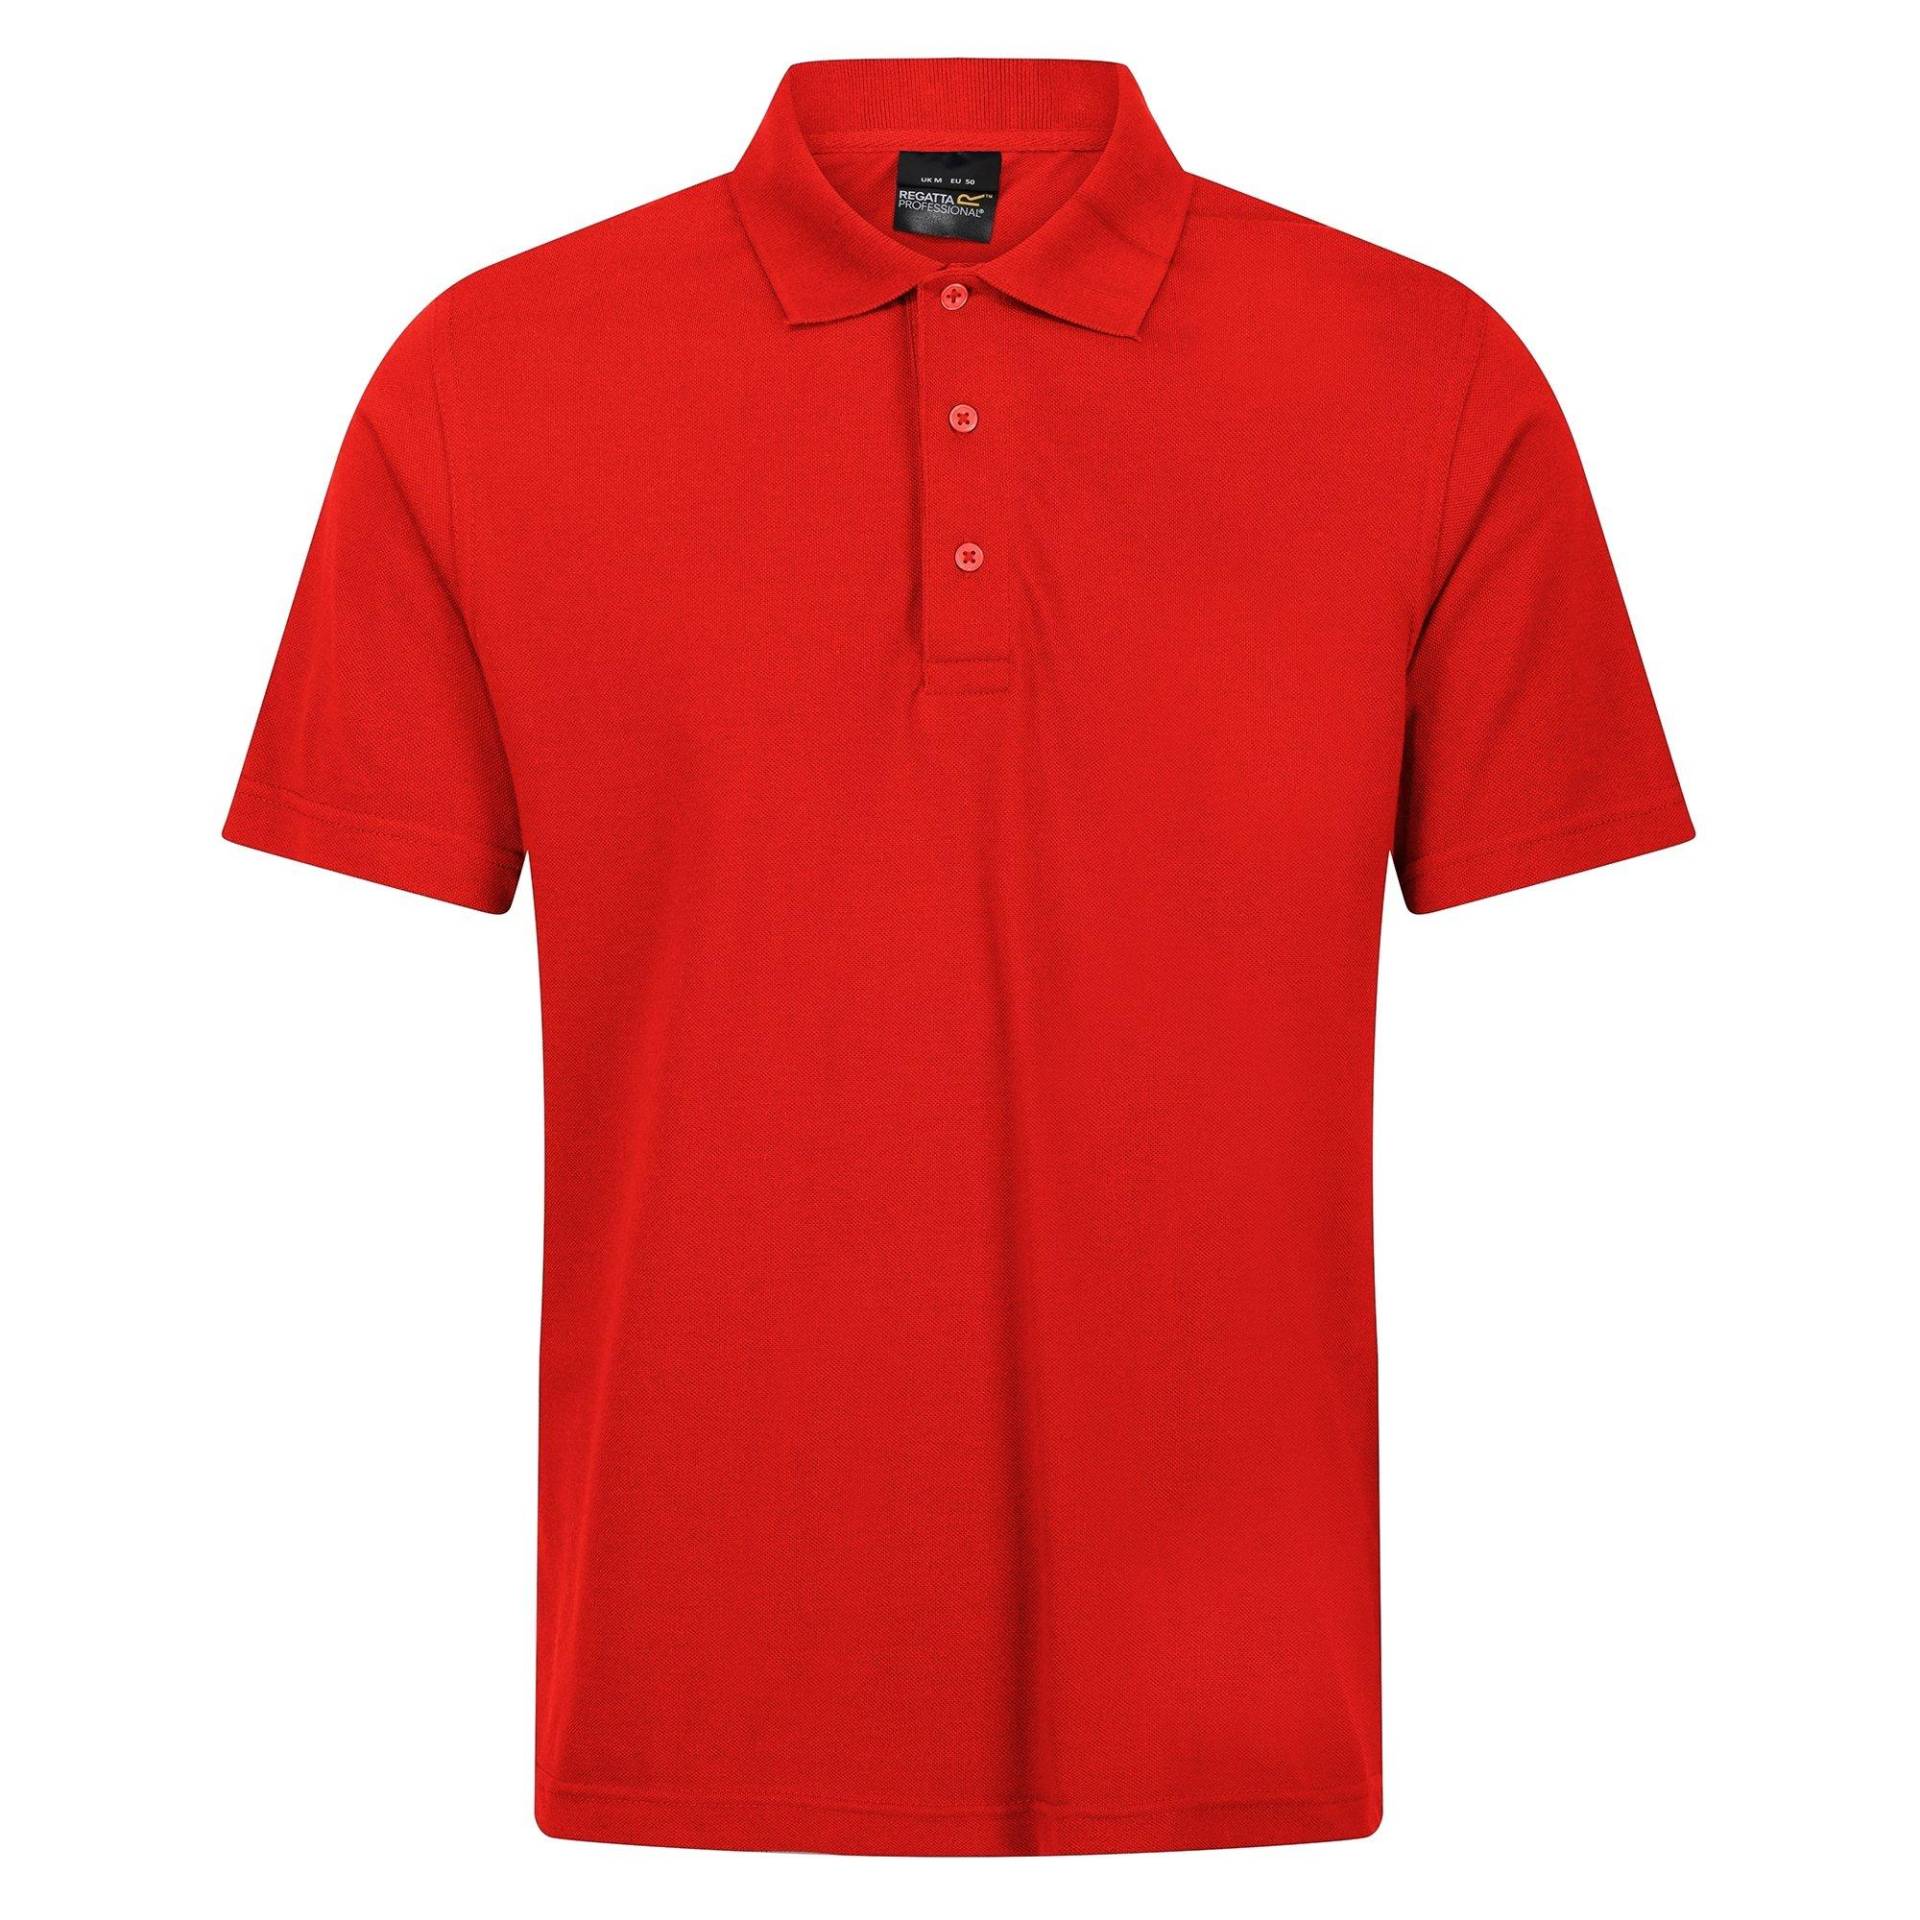 Pro 6535 Poloshirt Kurzärmlig Herren Rot Bunt XL von Regatta